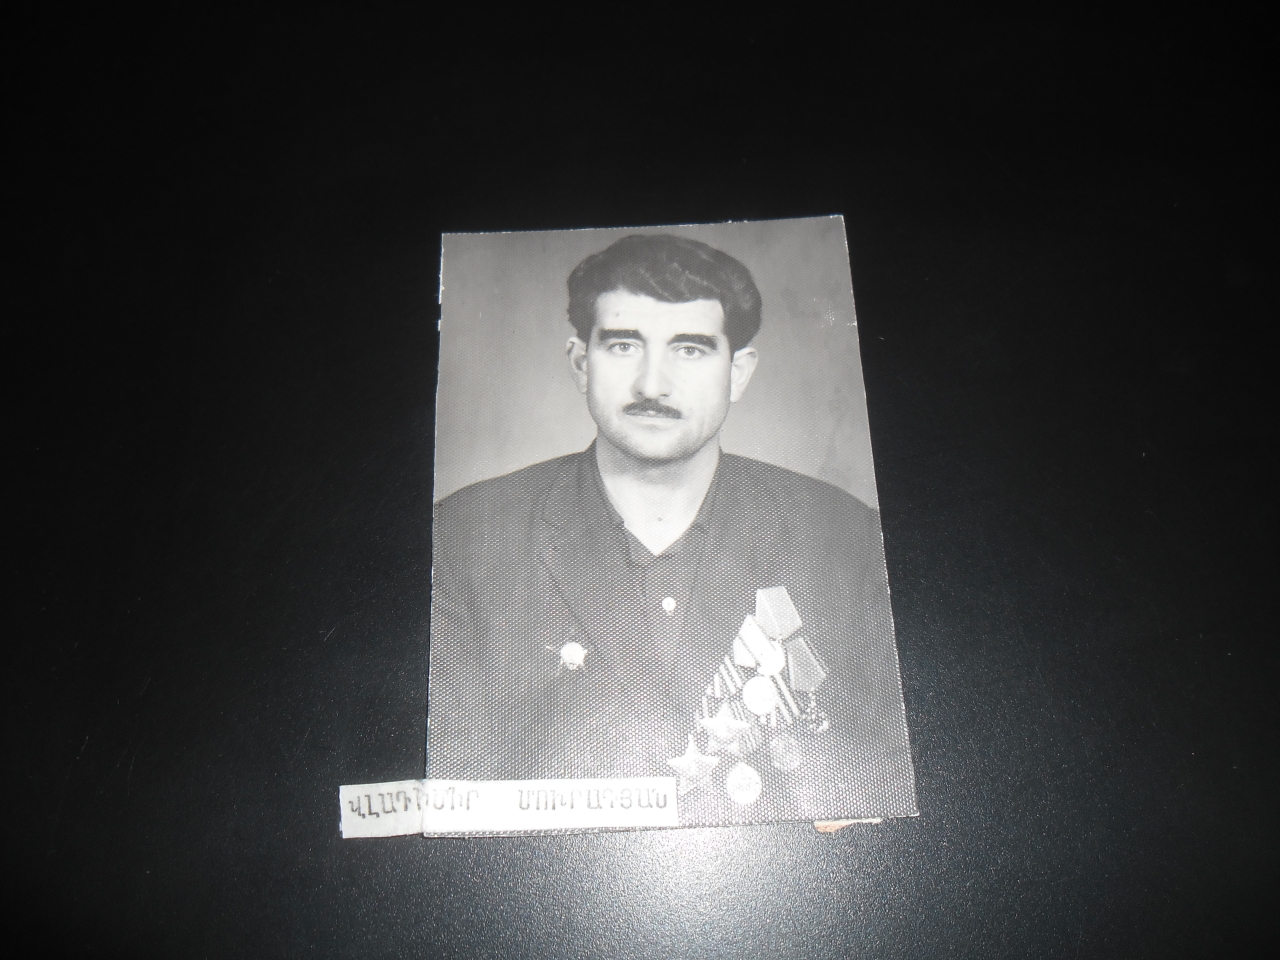 Լուսանկար՝ Վլադիմիր Մուրադյանի (Հայրենական պատերազմի մասնակից)